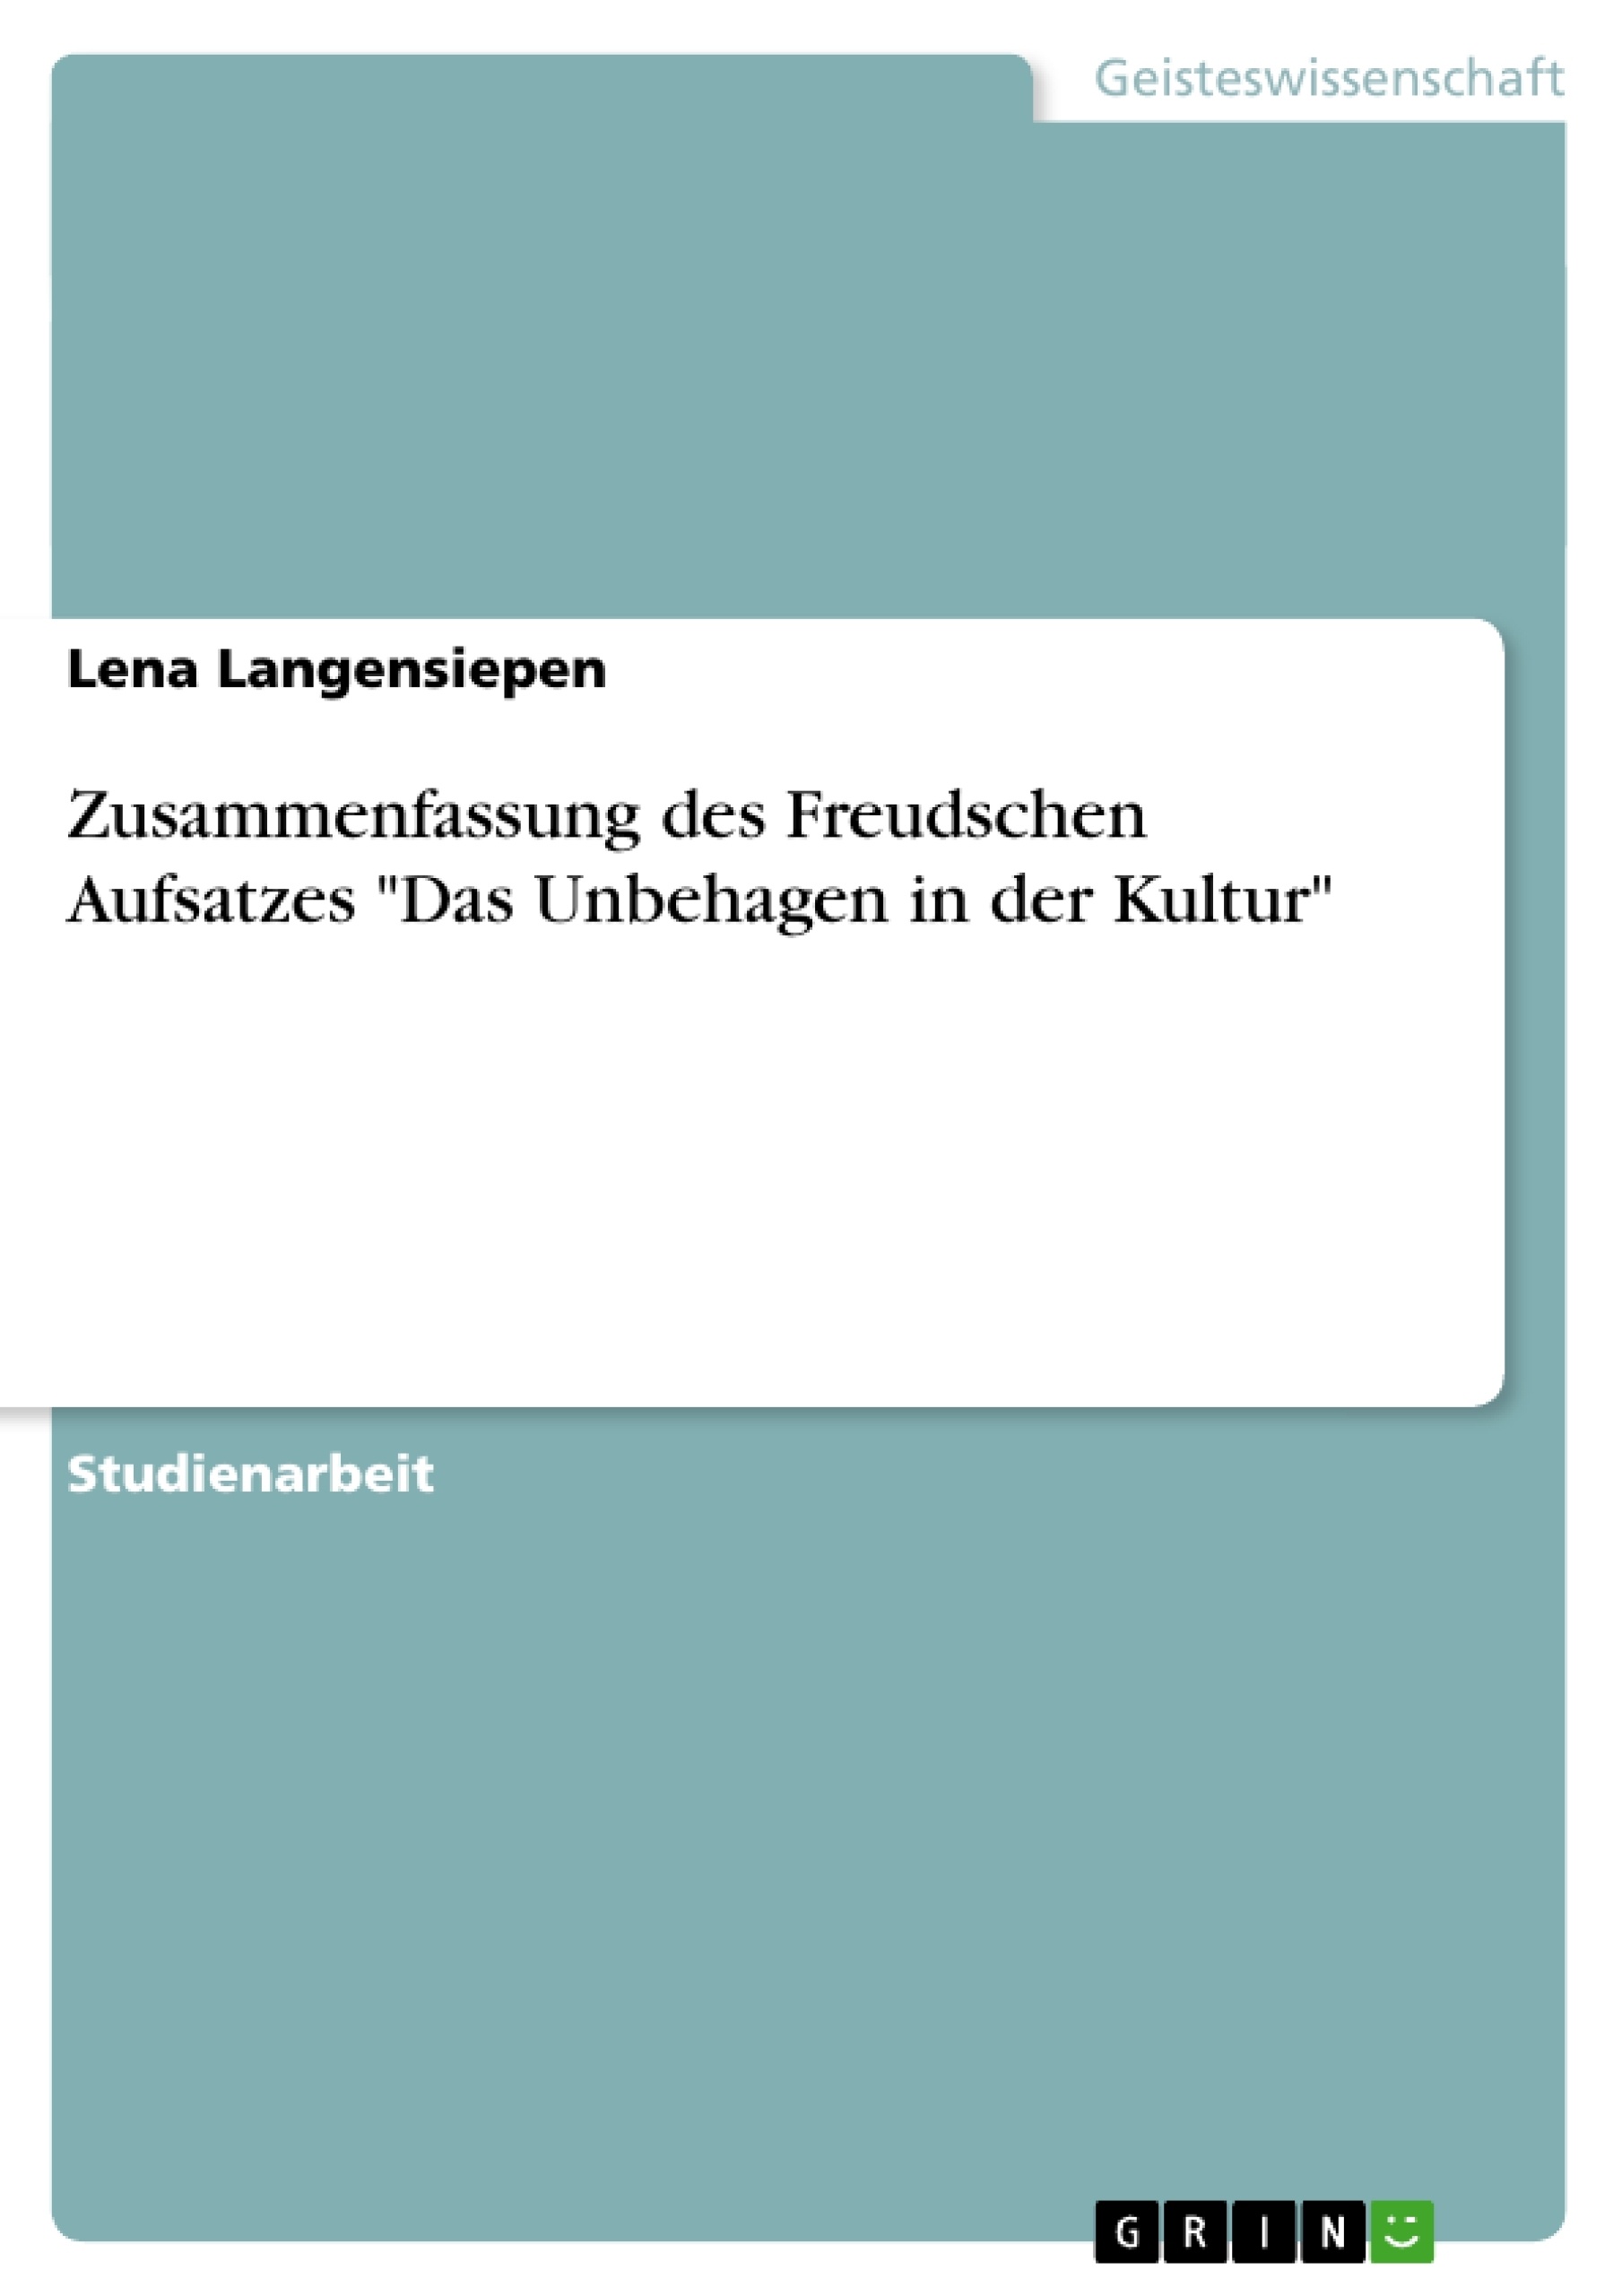 Title: Zusammenfassung des Freudschen Aufsatzes "Das Unbehagen in der Kultur"